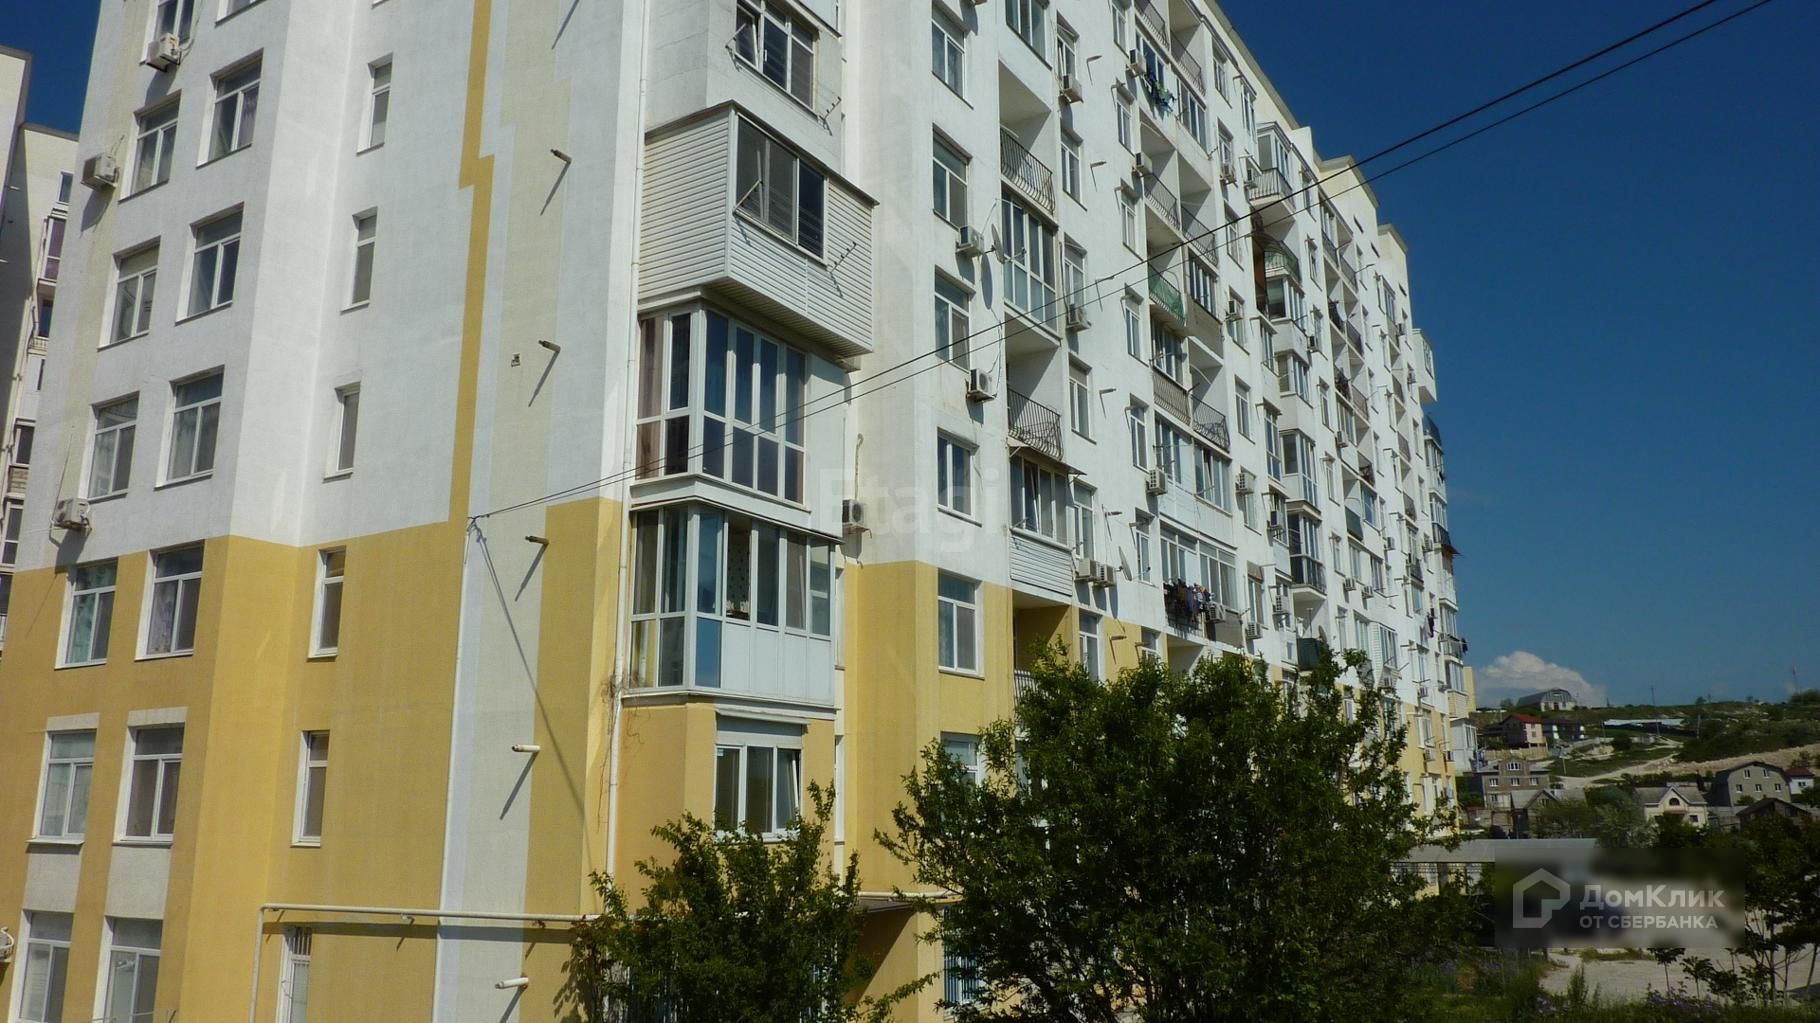 г. Севастополь, ул. Степаняна, д. 4, к. 1 - фасад здания